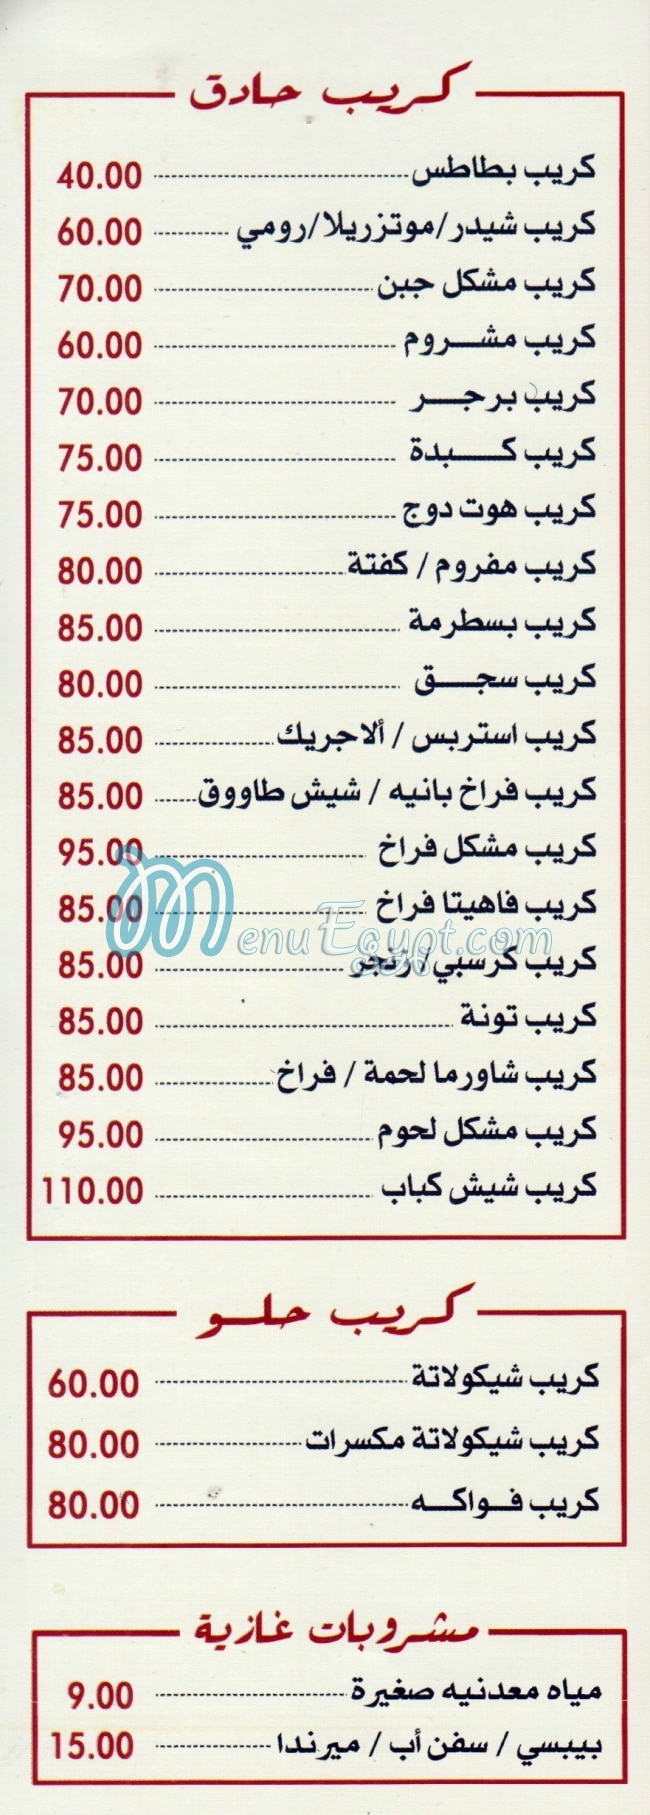 Gad Sharm El Shaikh menu prices